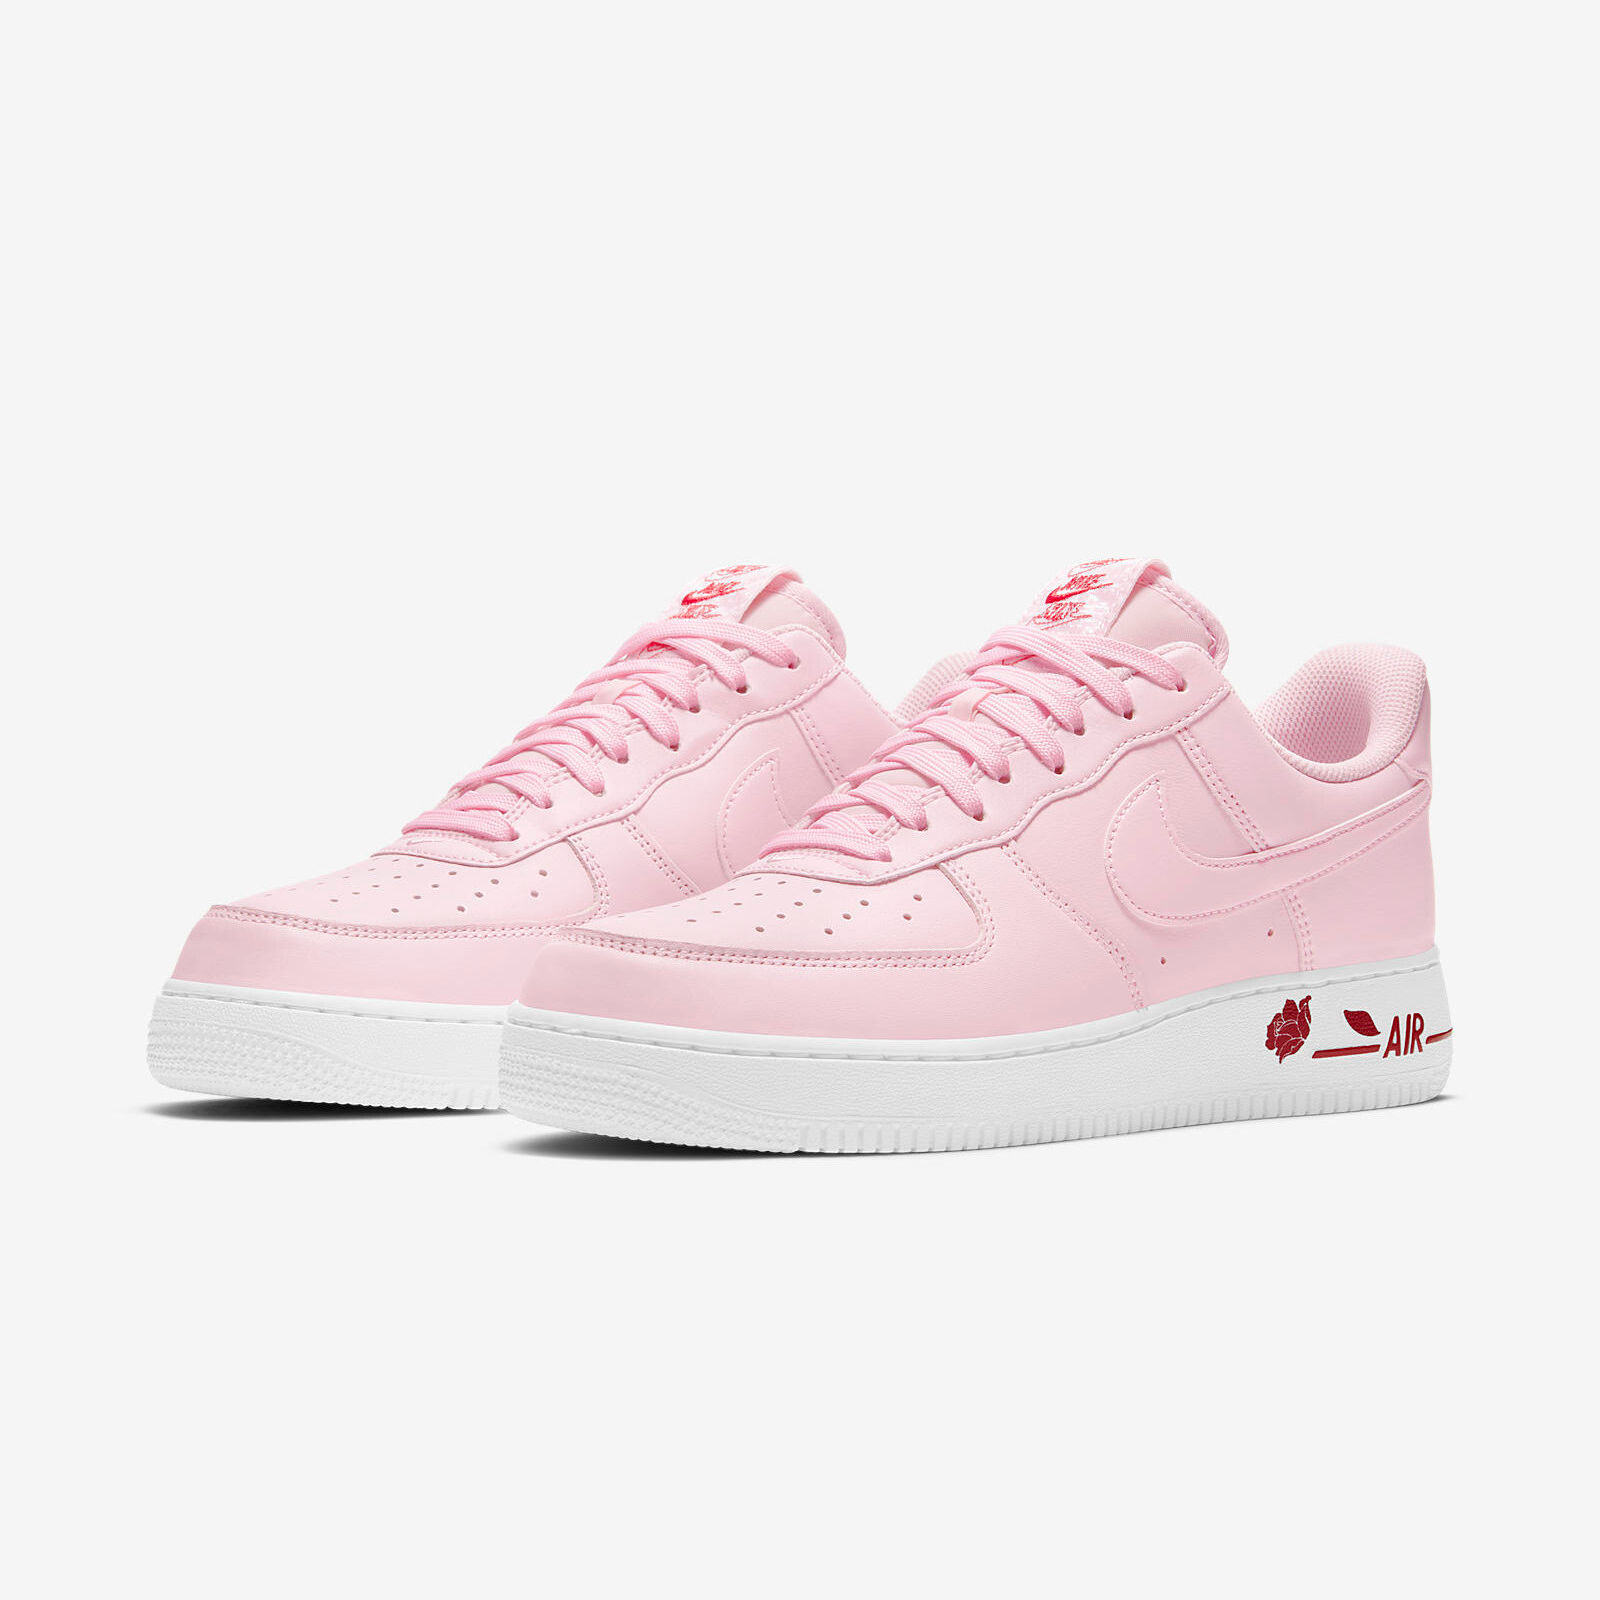 Nike Air Force 1
« Pink Bag »